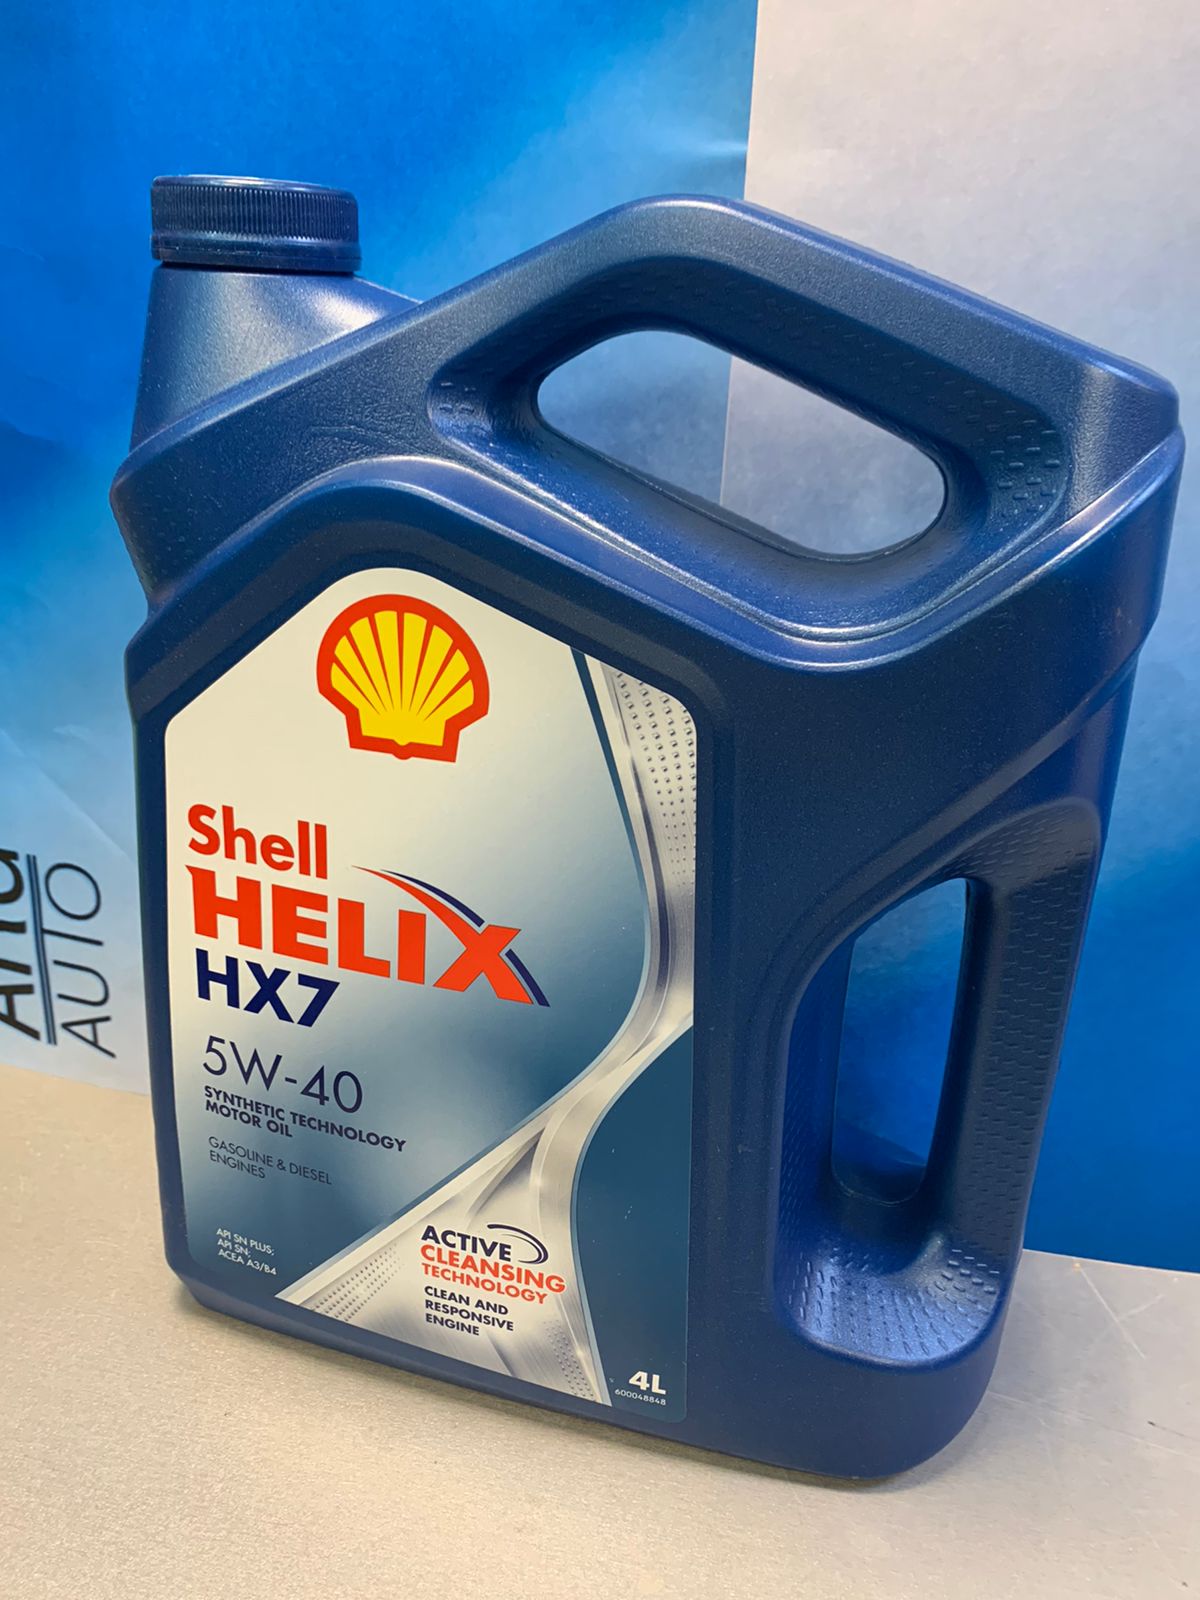 Shell Helix HX7 5w40 4L